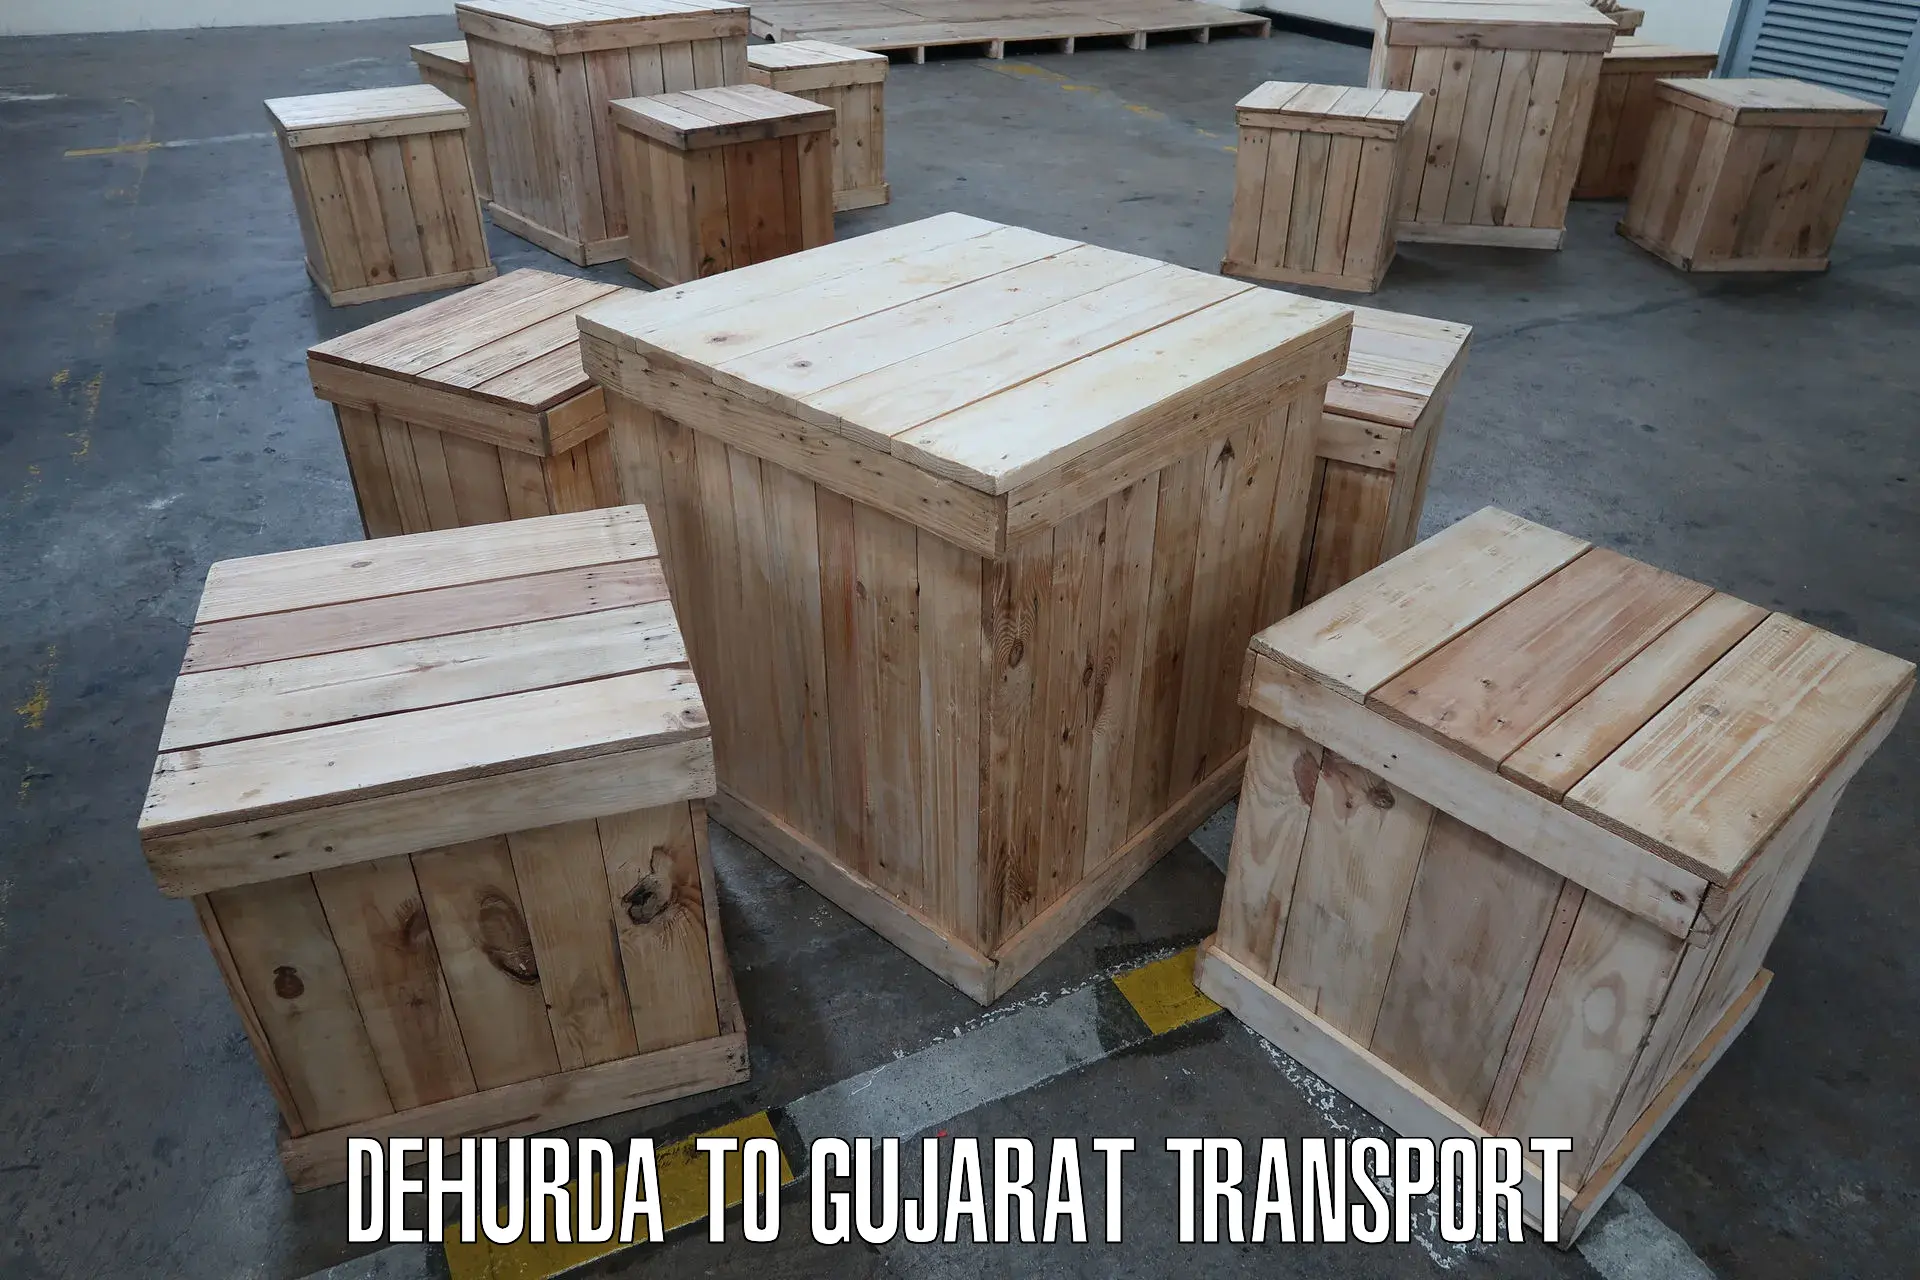 Transport services in Dehurda to Vadodara